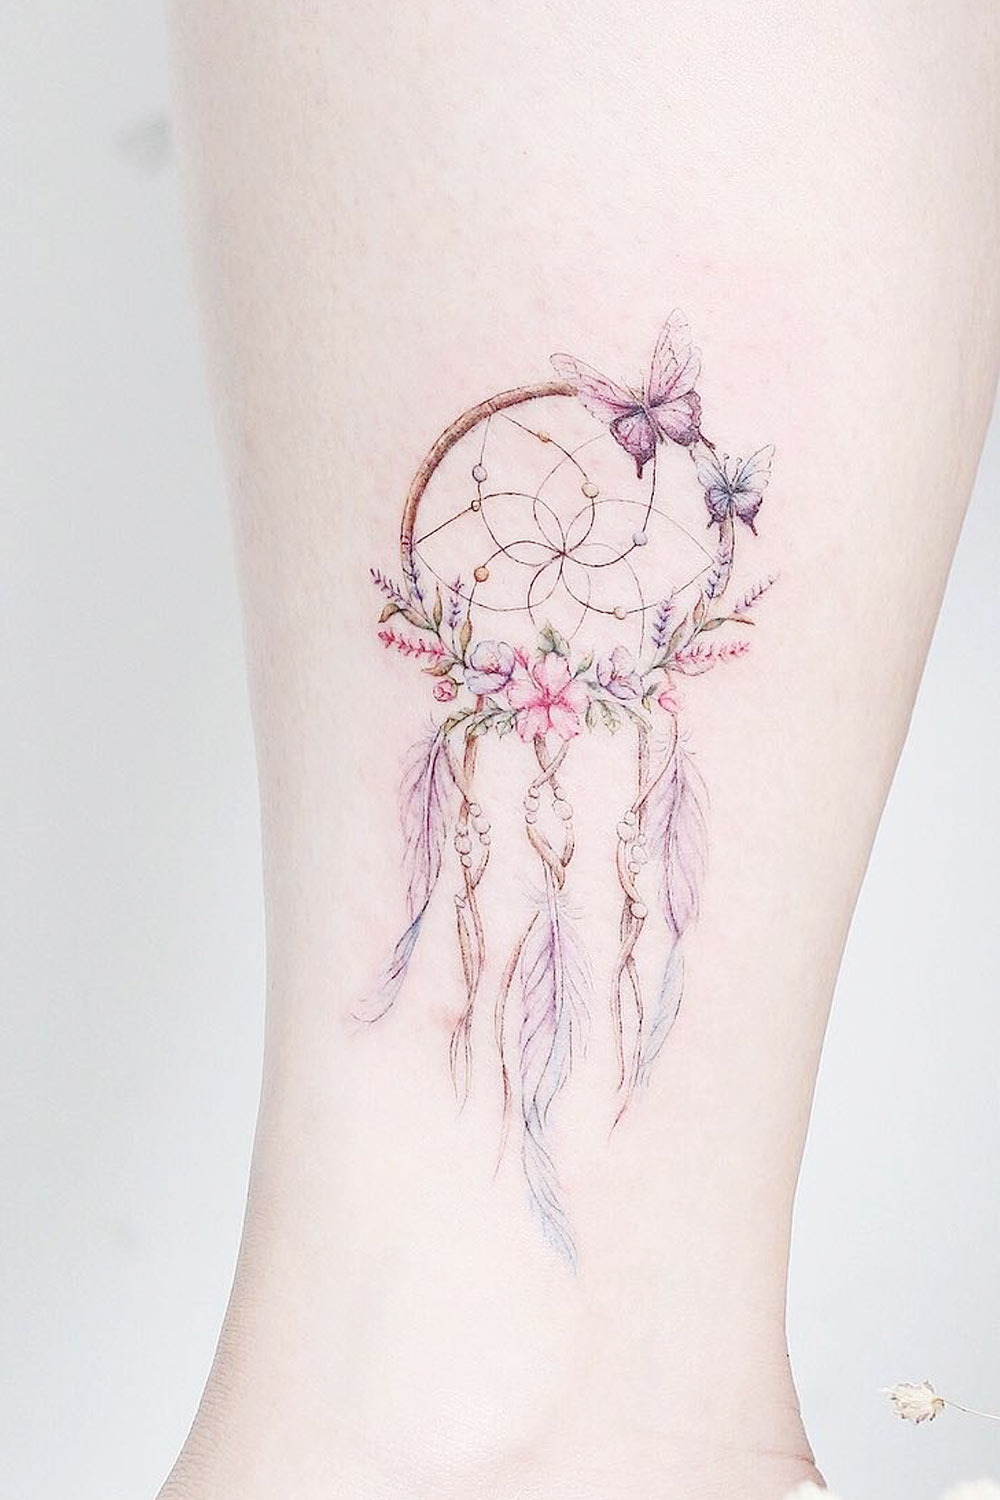 Dream Catcher Tattoo Design with Butterflies